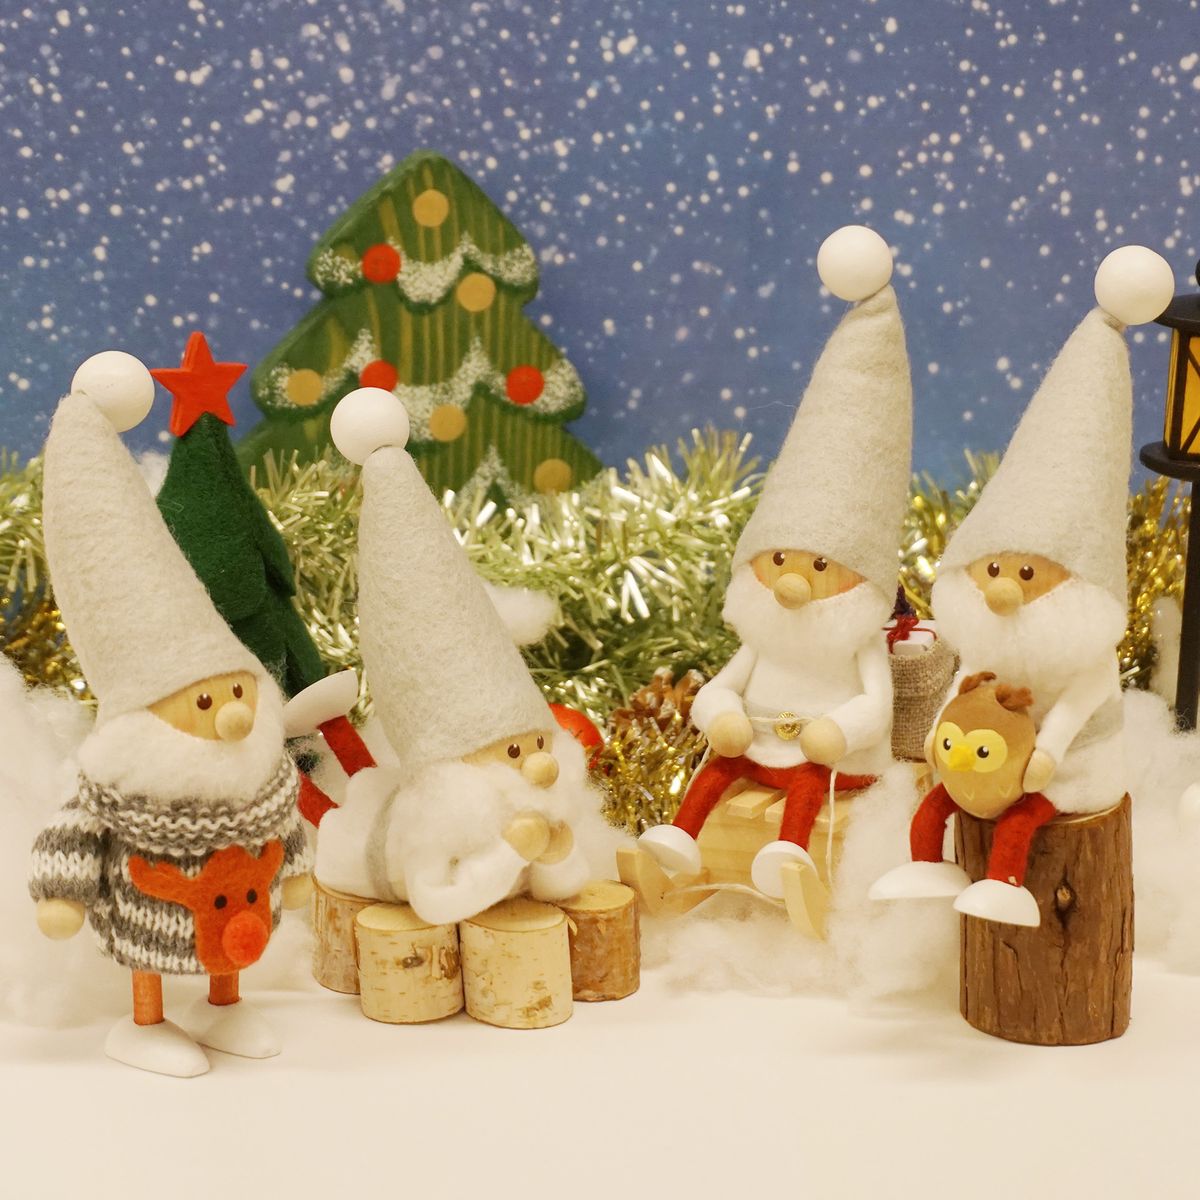 ノルディカ ニッセ クリスマス 木製人形 寝転がるサンタ サイレントナイト